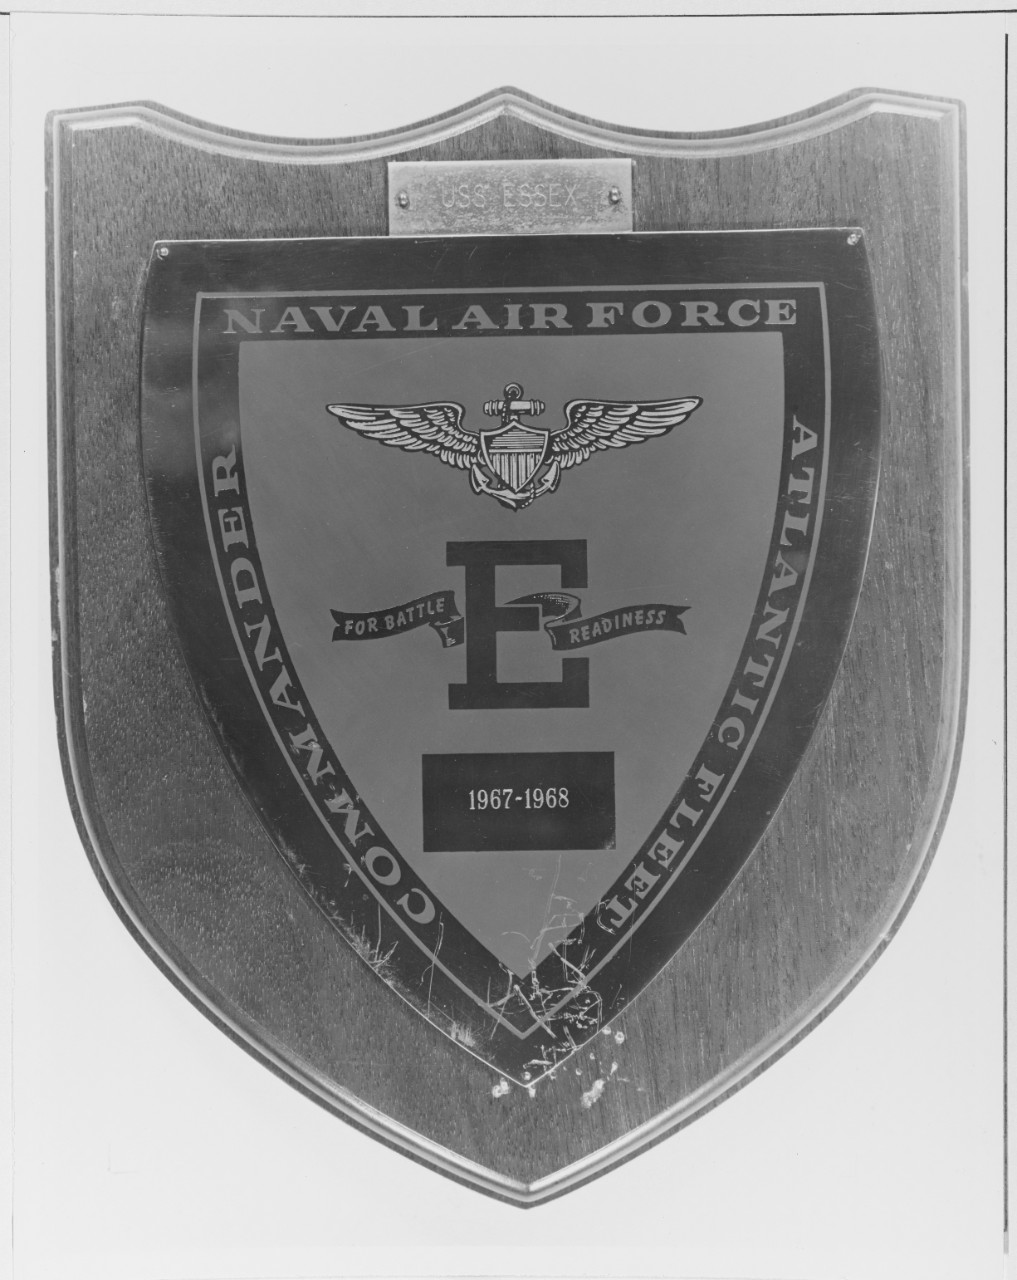 Award to USS ESSEX (CVS - 91)